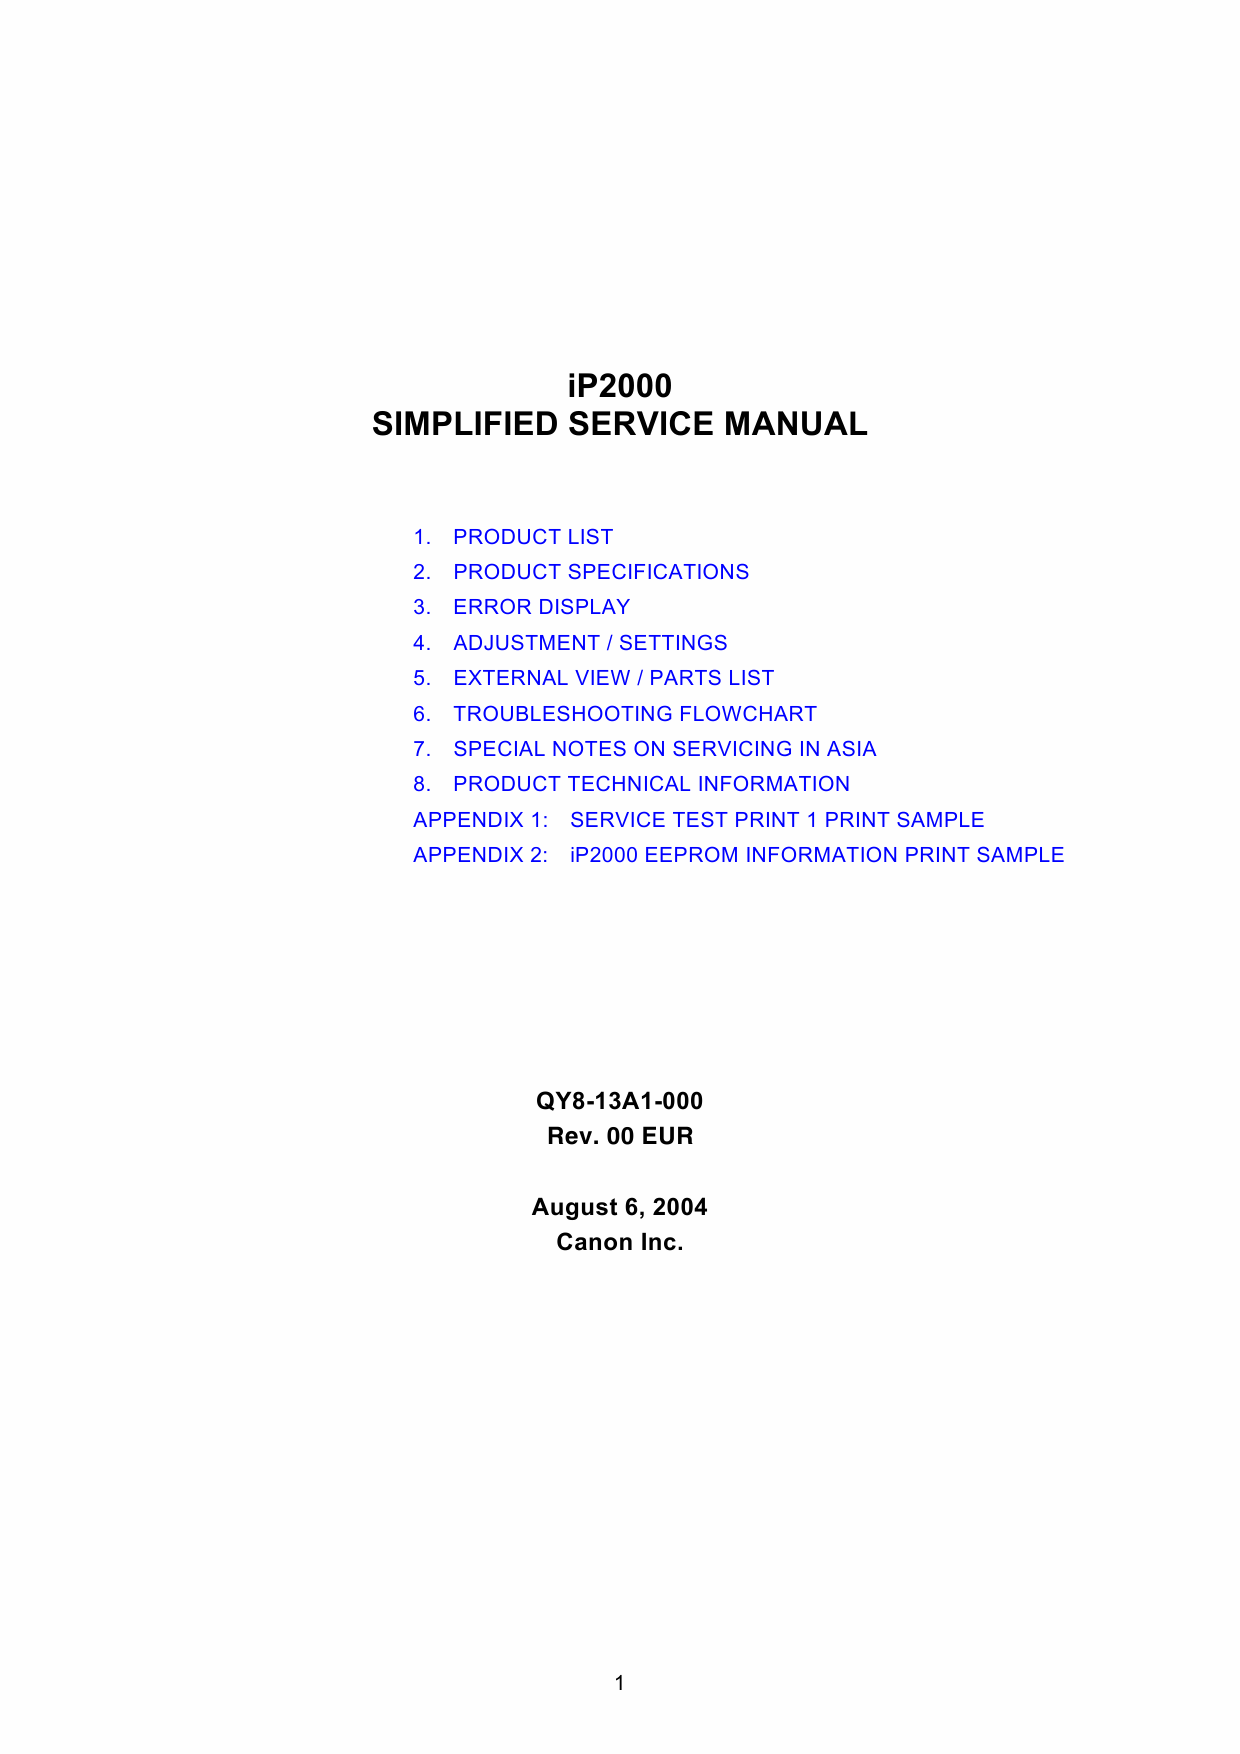 Canon PIXMA iP2000 Simplified Service Manual-1